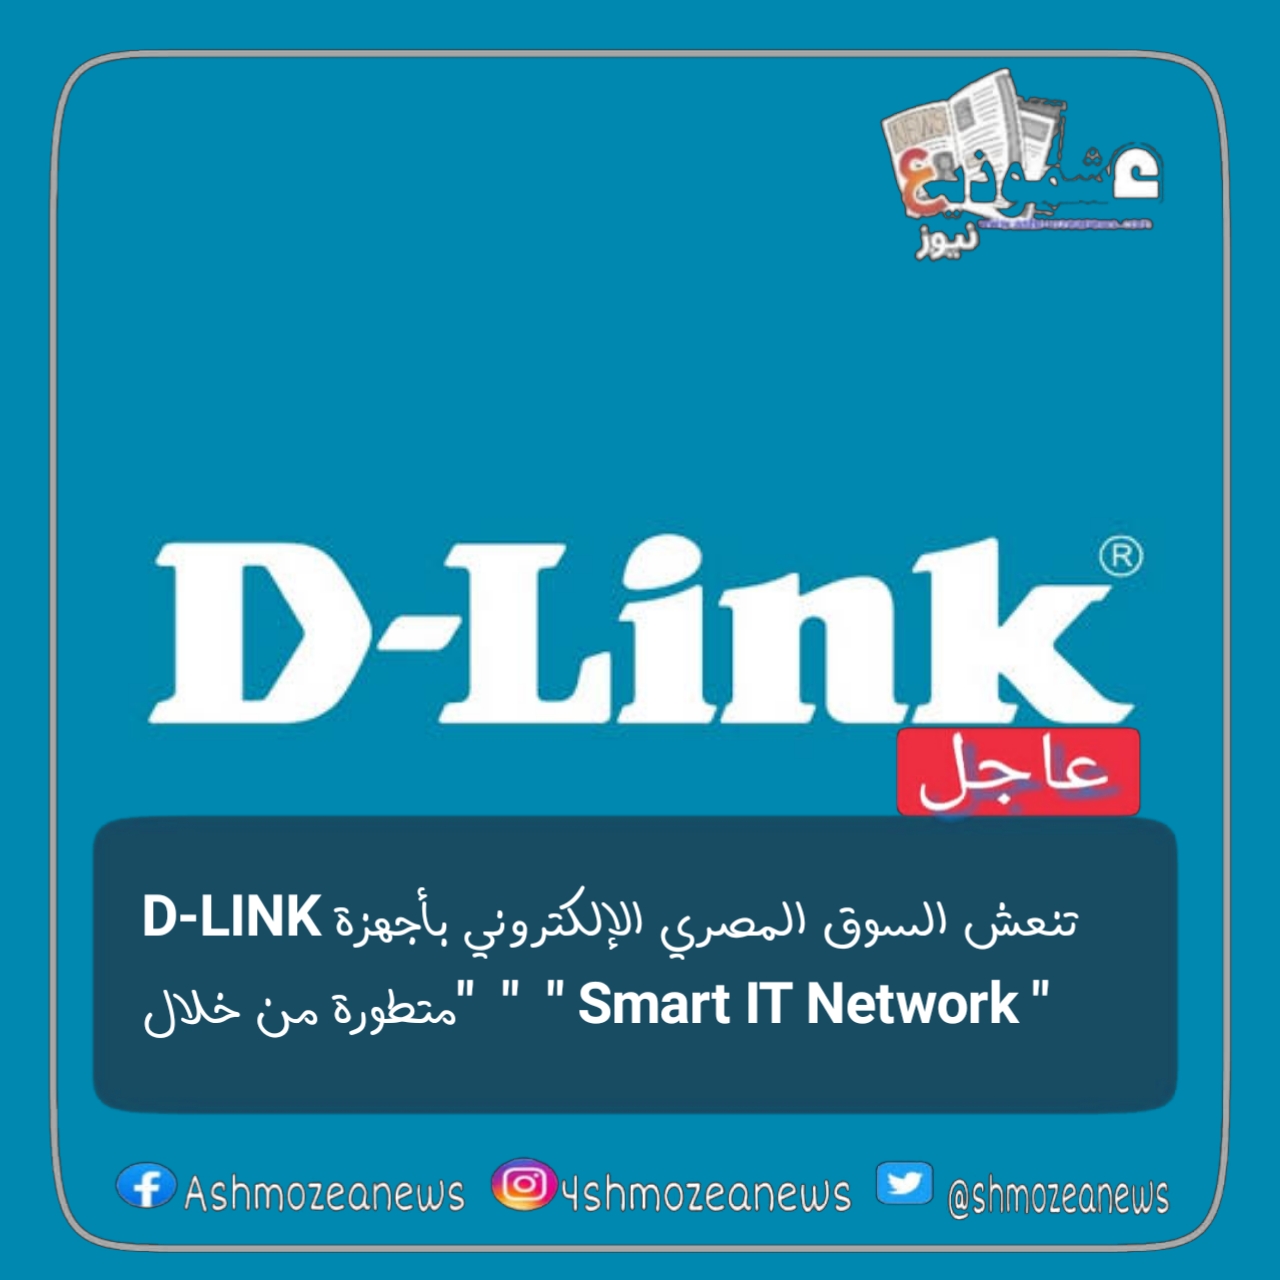 " D-LINK " تنعش السوق المصري الإلكتروني بأجهزة متطورة من خلال " Smart IT Network "